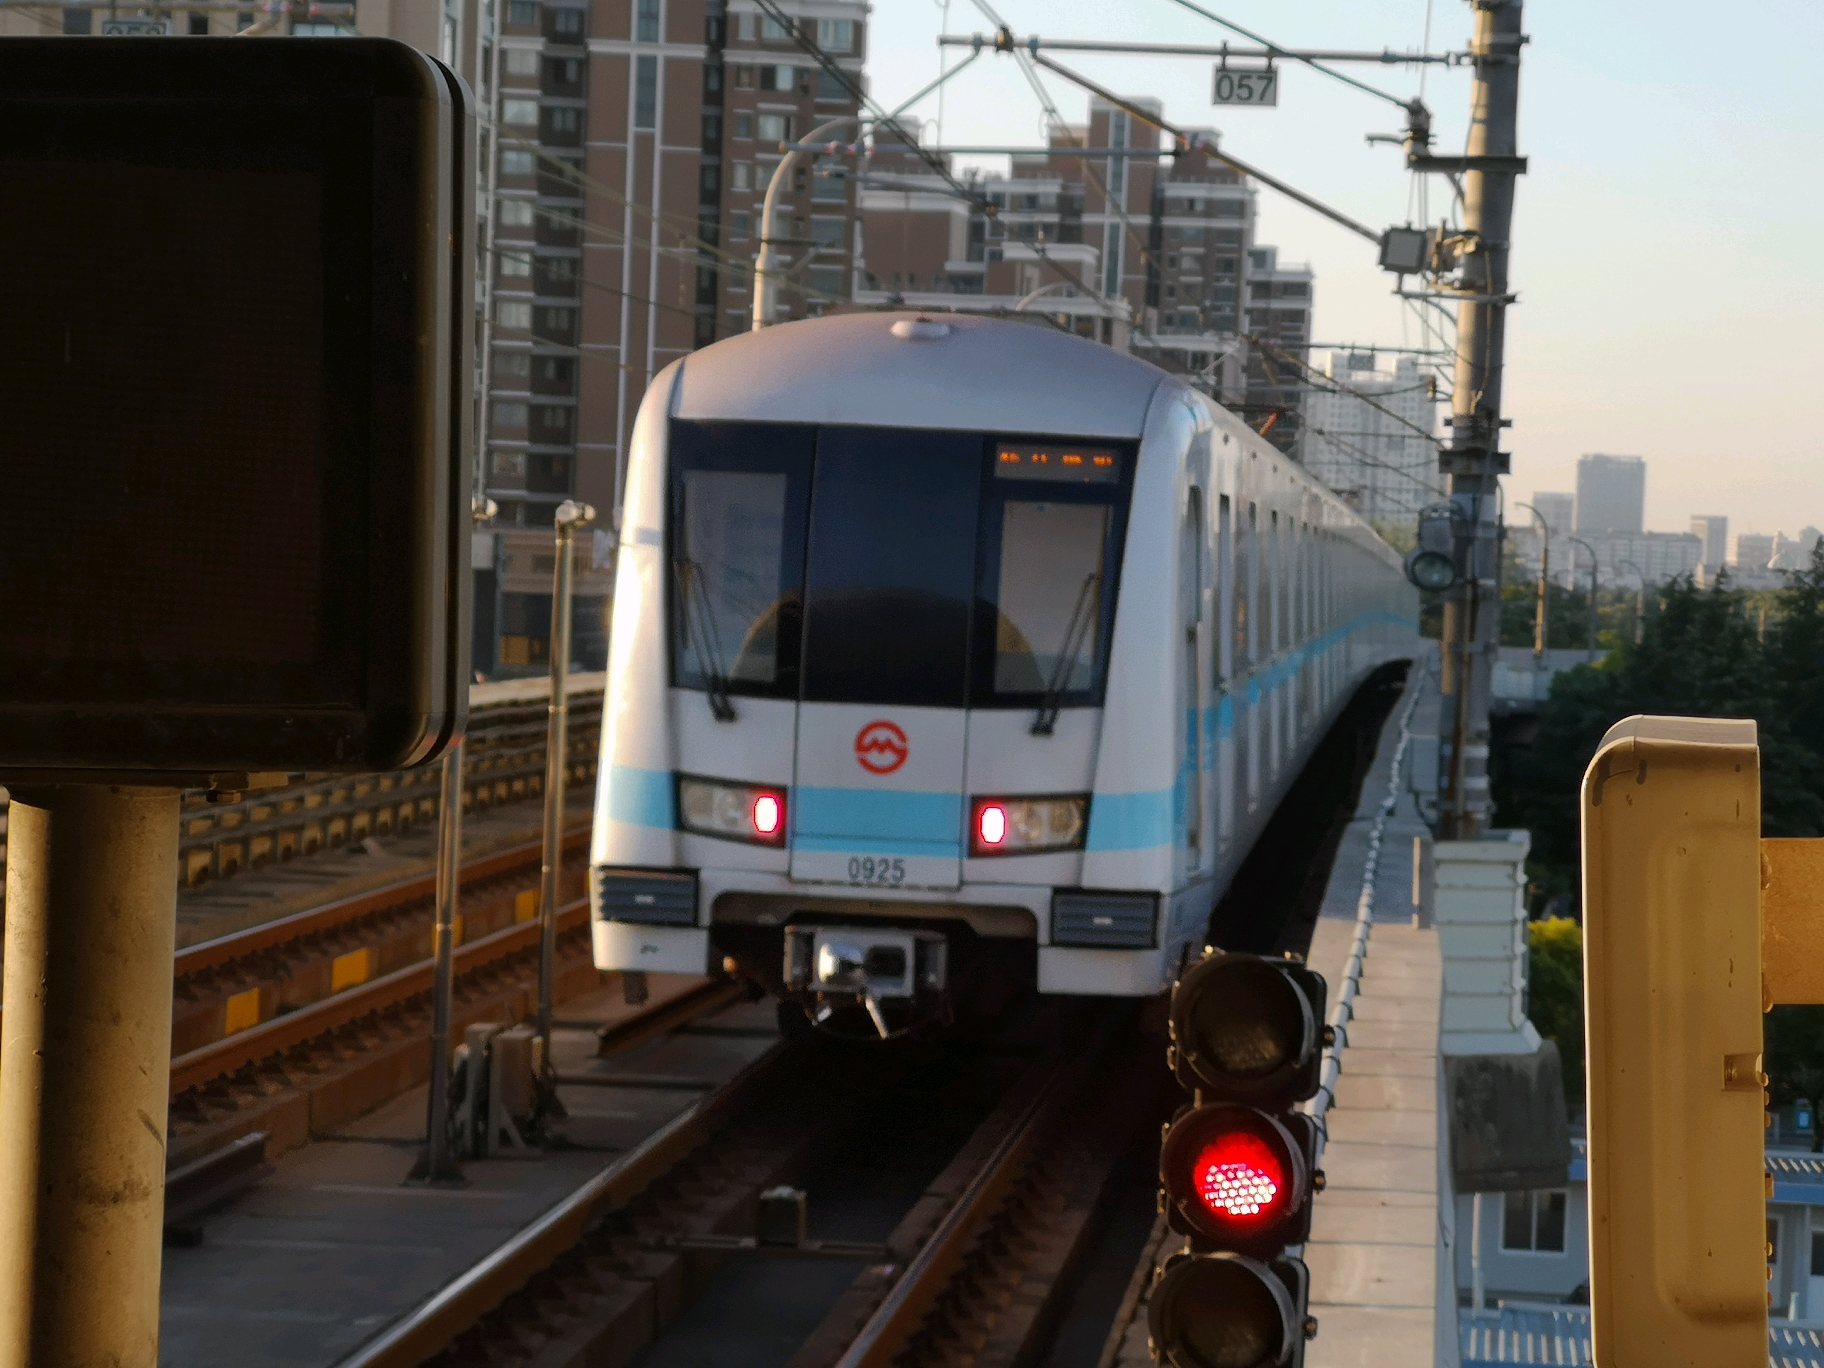 【上海地铁】上海地铁9号线4型104列列车大头照全集（续集） - 哔哩哔哩